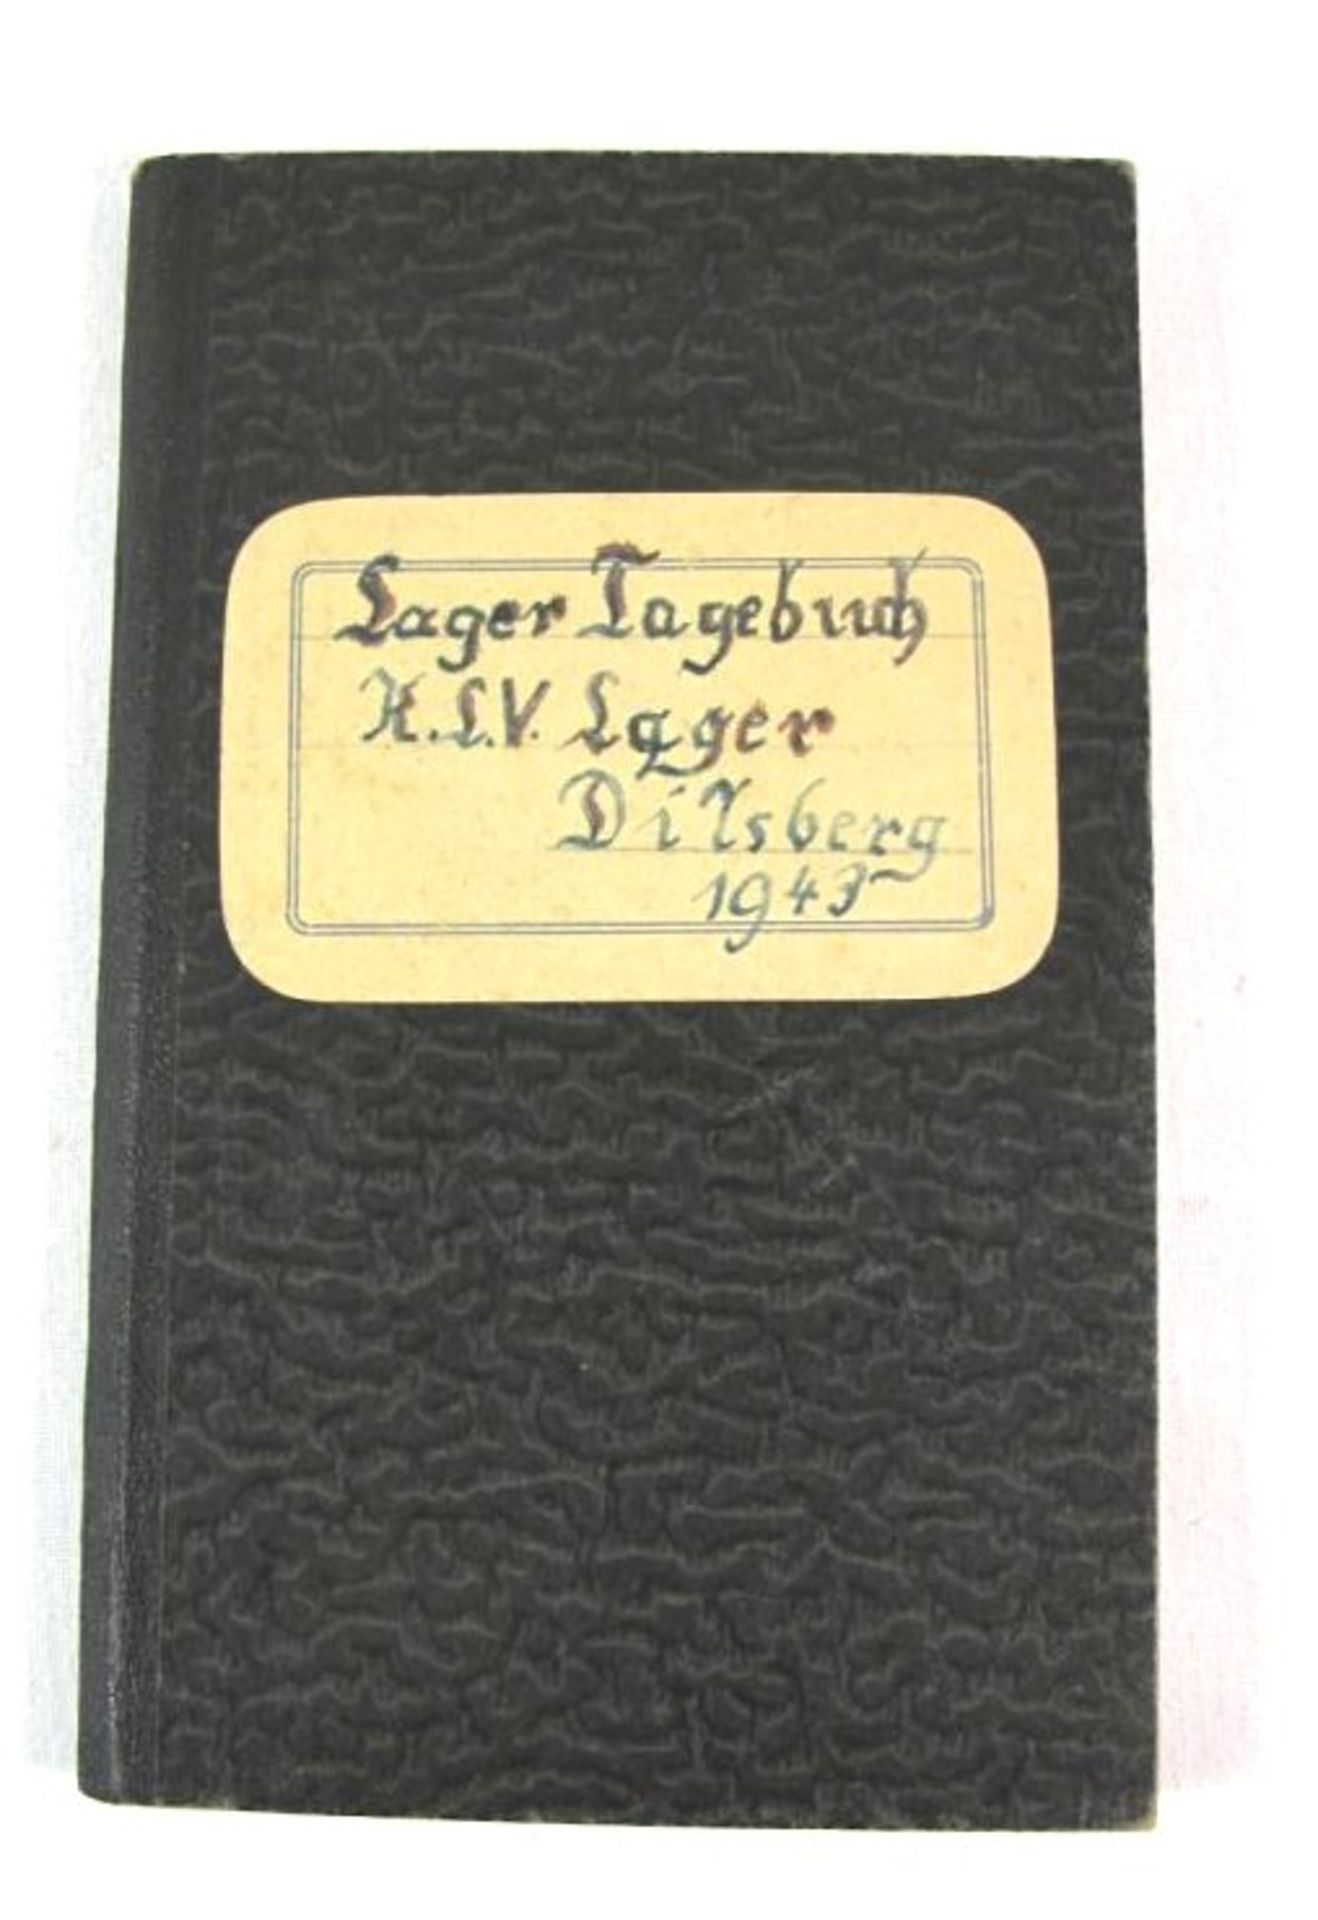 Lagertagebuch eines Mädchens, K.S.V.Lager Dilsberg 1943.